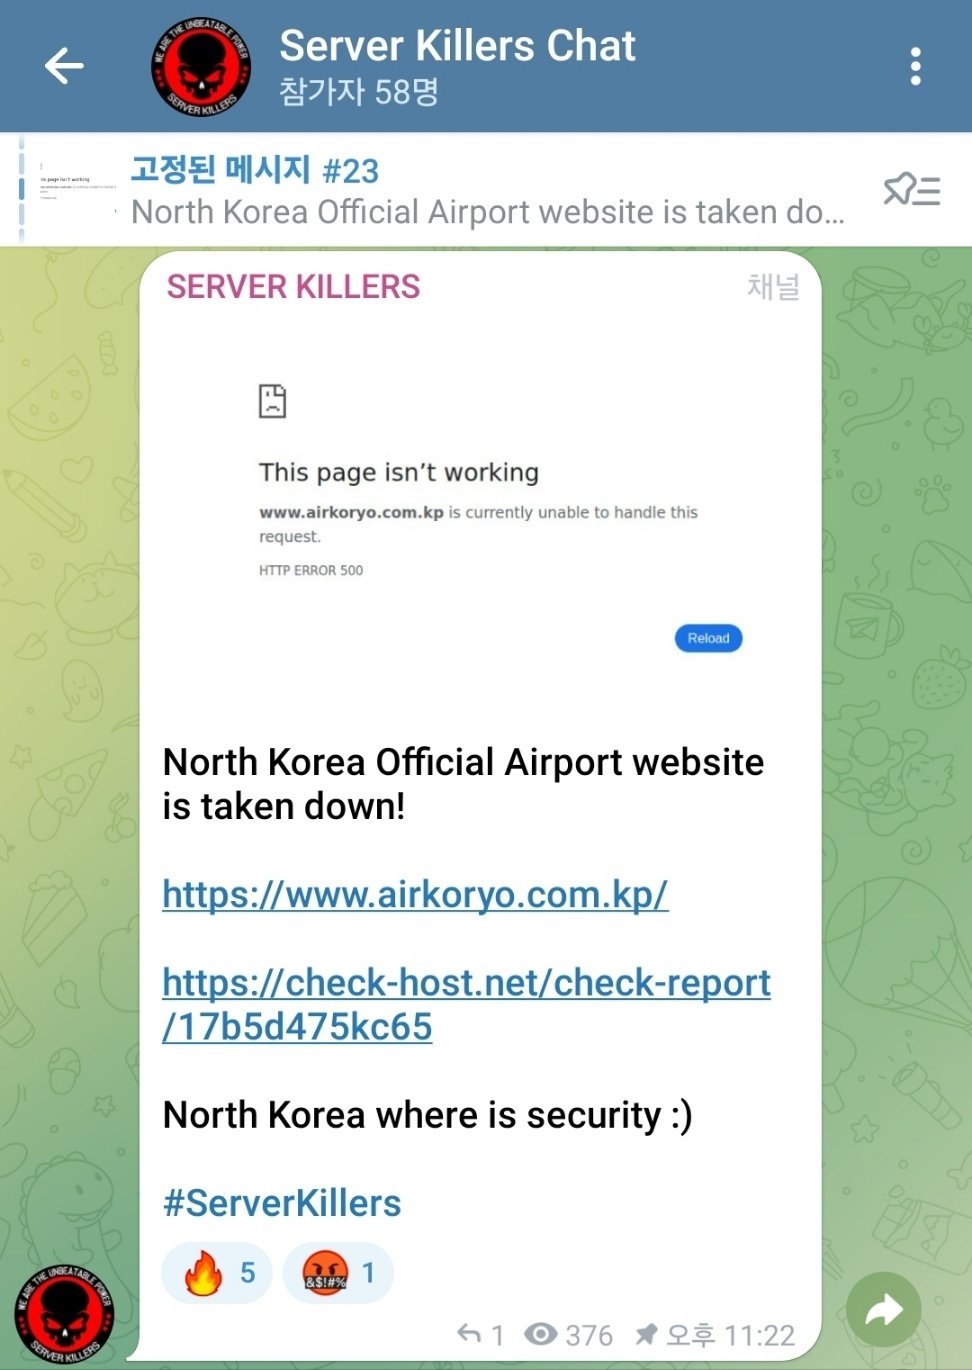 친(親) 러시아 성향 해킹조직 ‘서버 킬러즈’의 텔레그램 화면. 이들은 지난 9일 텔레그램을 통해 북한 고려항공 홈페이지를 디도스 공격을 가해 마비시켰다고 밝혔다.(서버 킬러즈 텔레그램 갈무리)